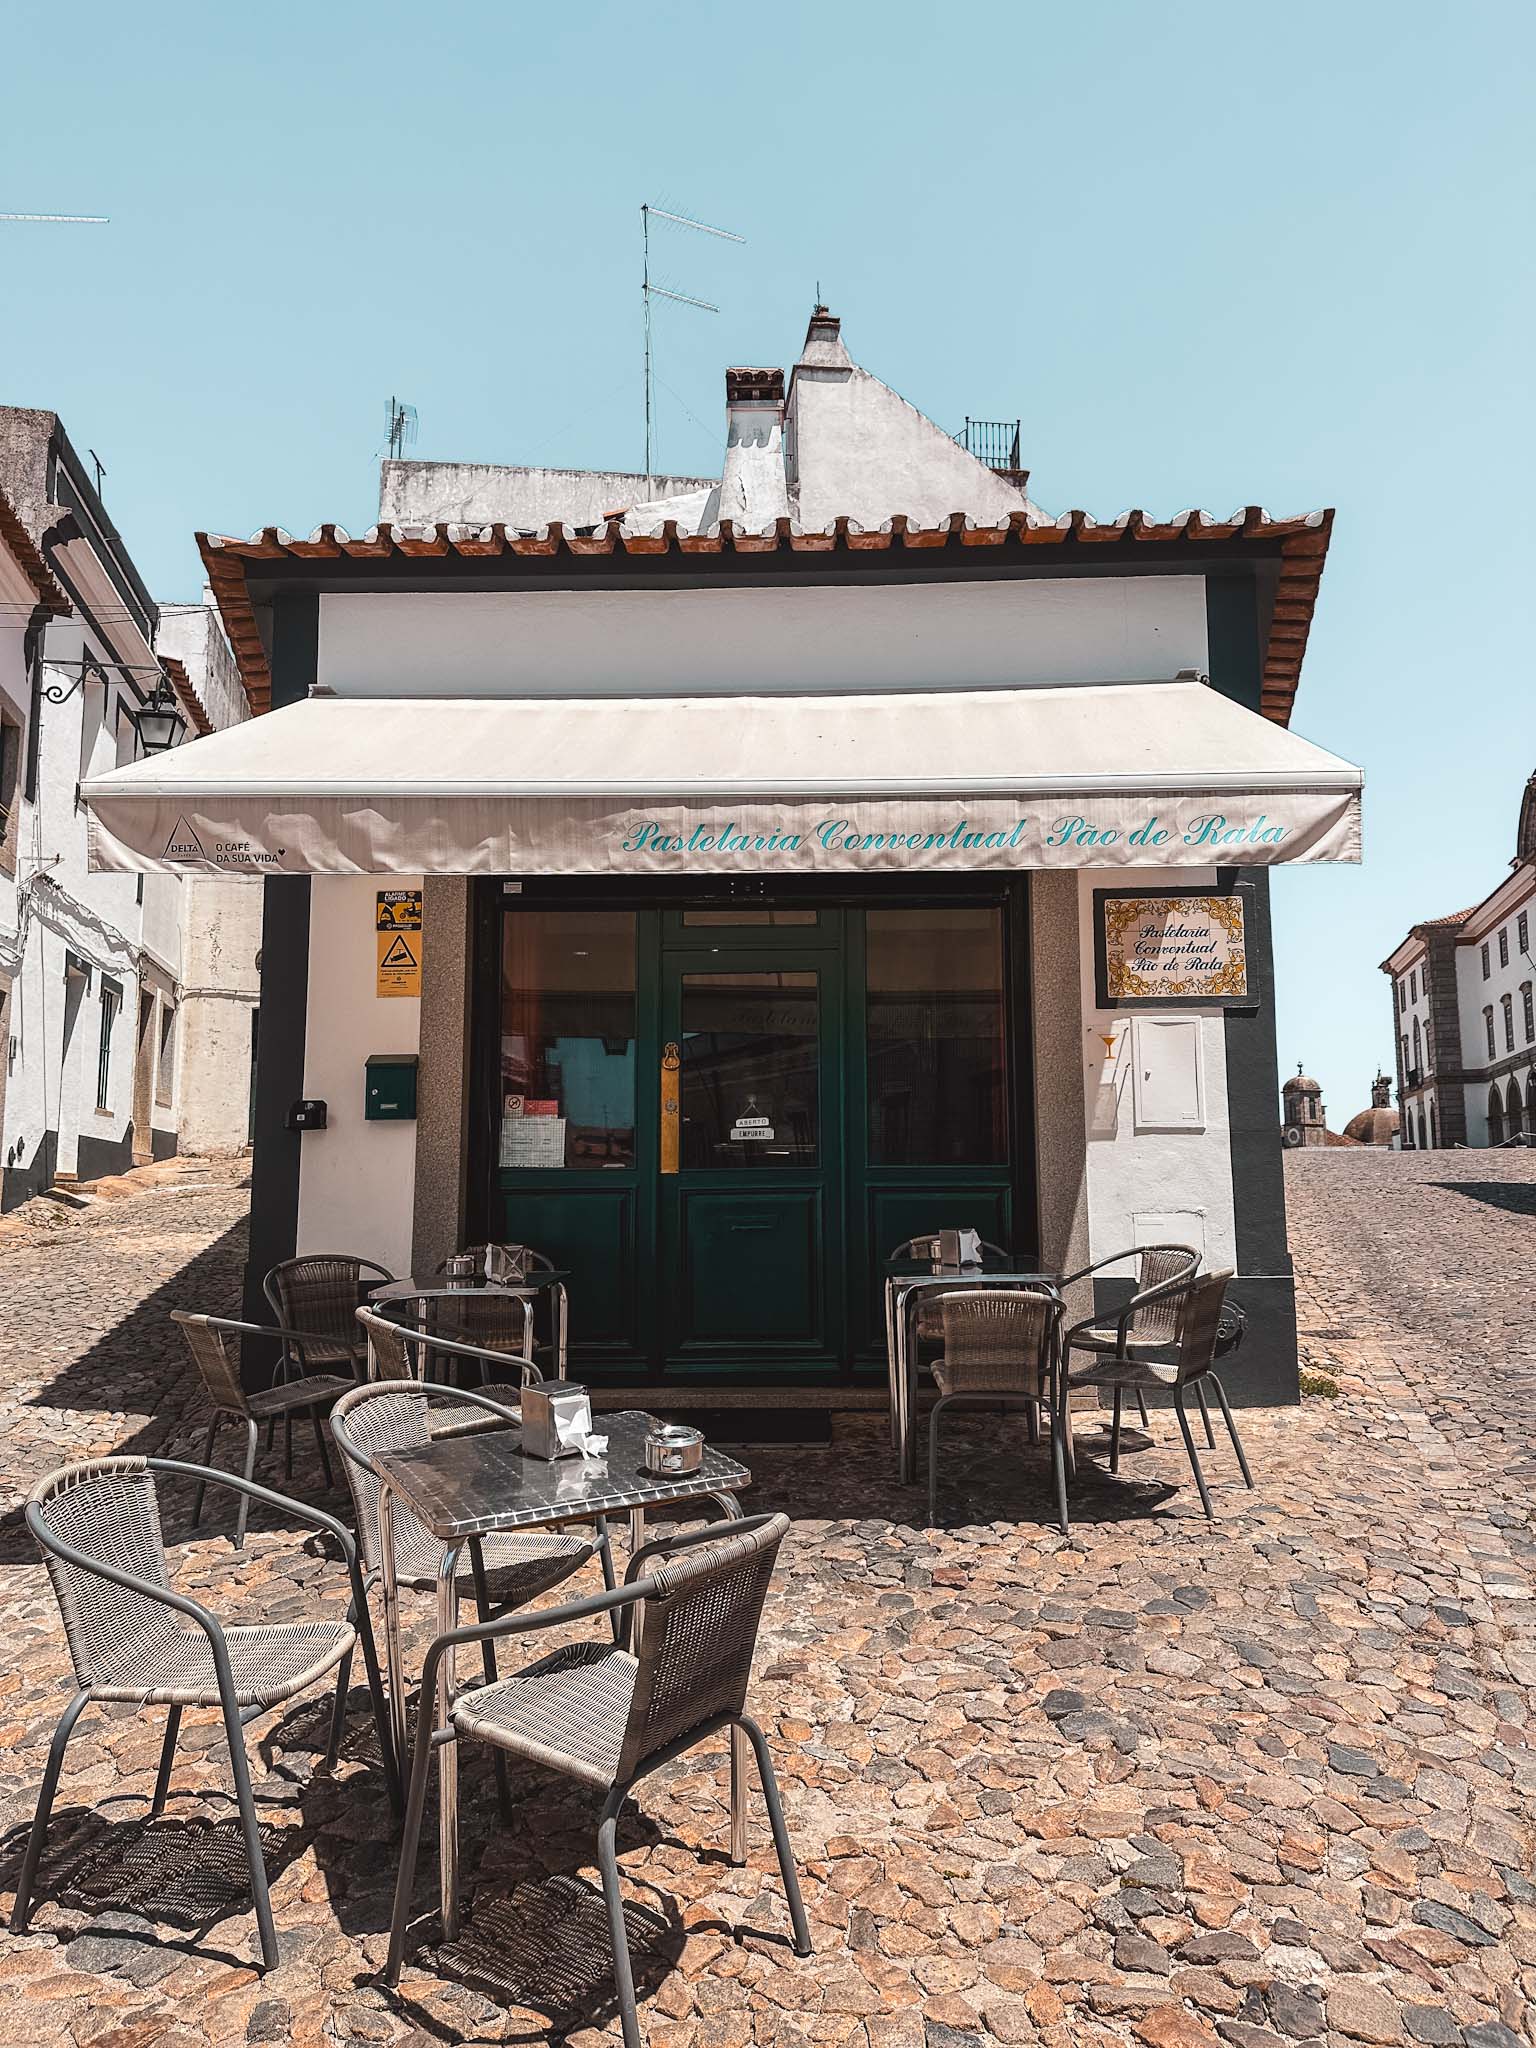 Evora, Portugal best things to do - Pastelaria Conventual Pão de Rala pastry shop